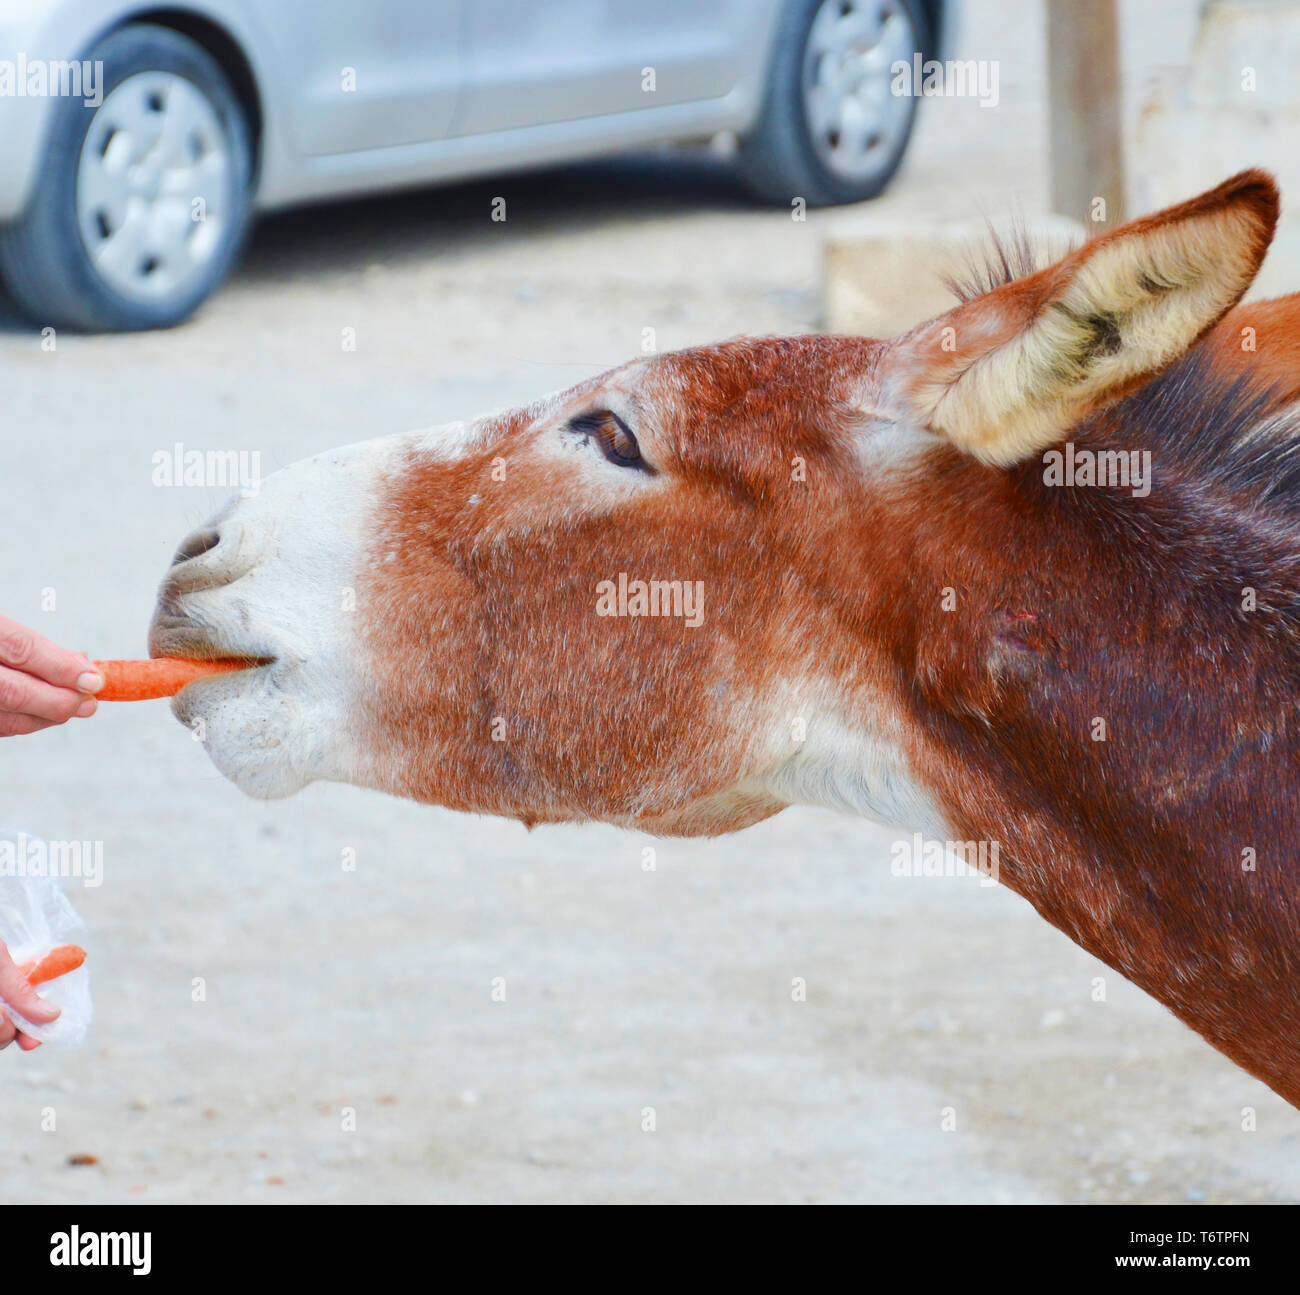 Dettaglio di asino selvatico prese la testa con una mano umana che è di alimentare gli animali con le carote. Prese a Dipkarpaz, Penisola Karpas, turca di Cipro nord. Il animali adorabili sono attrazione locale. Foto Stock